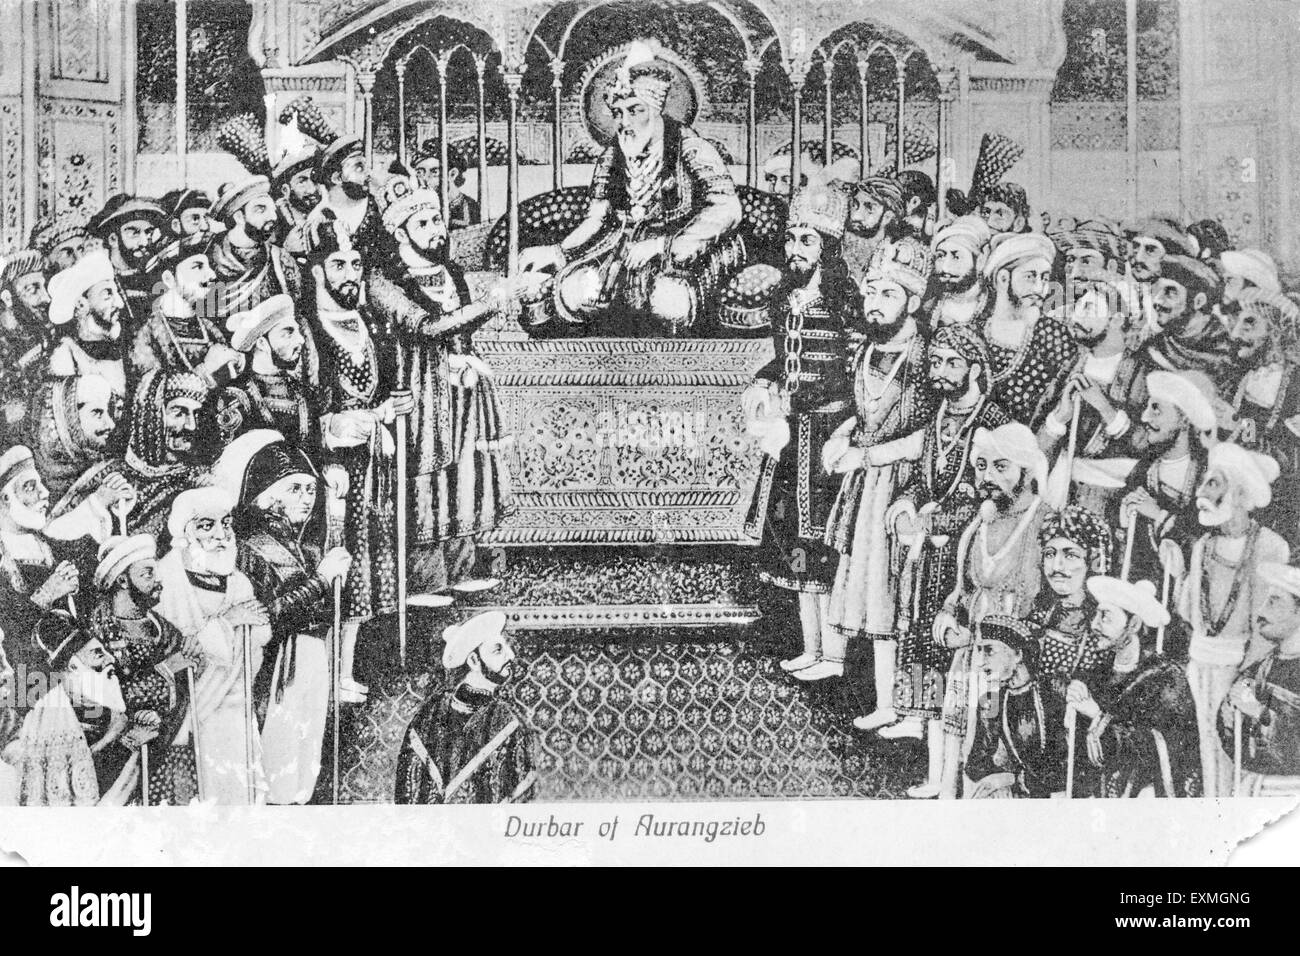 Durbar von Aurangzieb, Aurangzeb, Darbar, Mughal Court, Mughal Emperor, Alamgir, Muhi ud DIN Muhammad, Indien, alter Jahrgang 1700s Bild Stockfoto